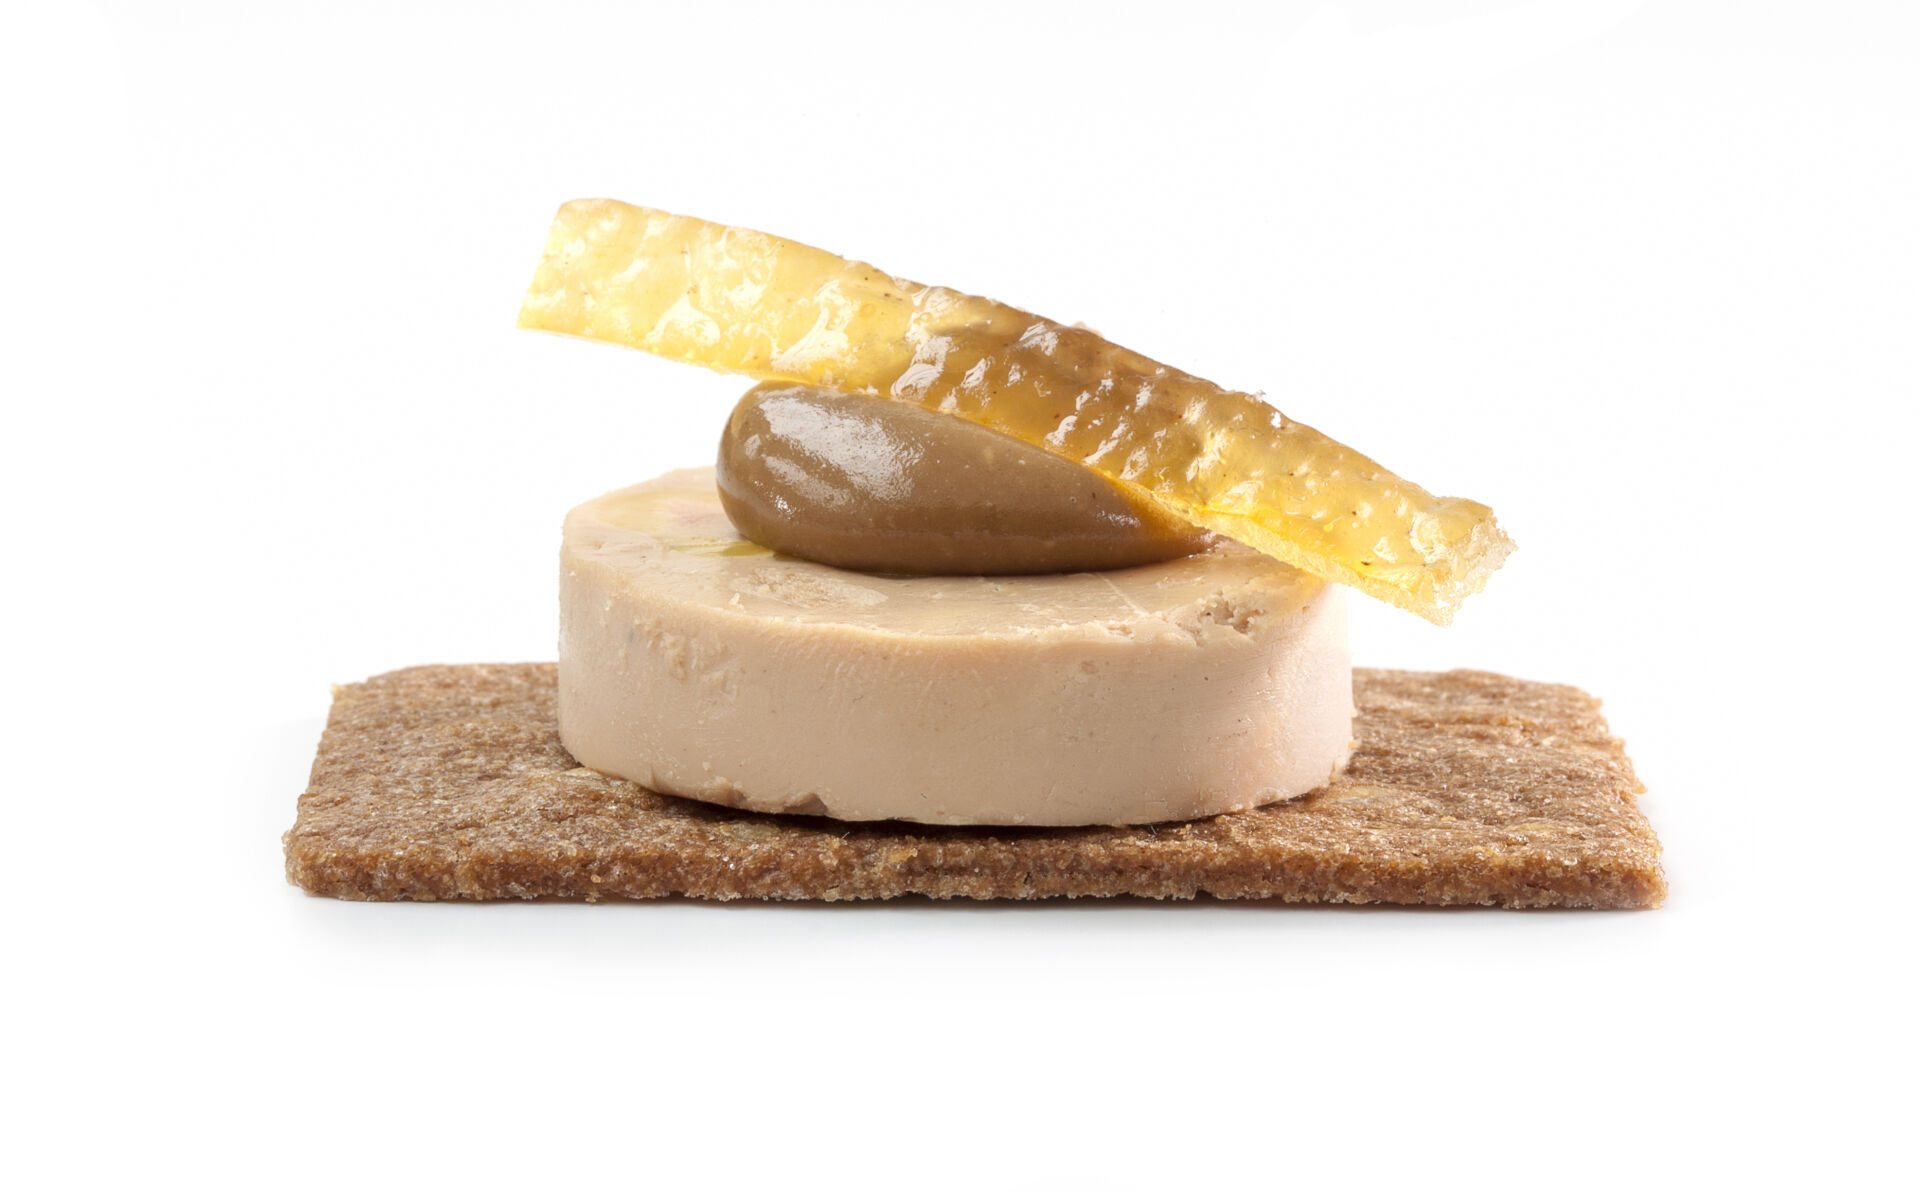 Gemberkoekje foie gras speculoospasta